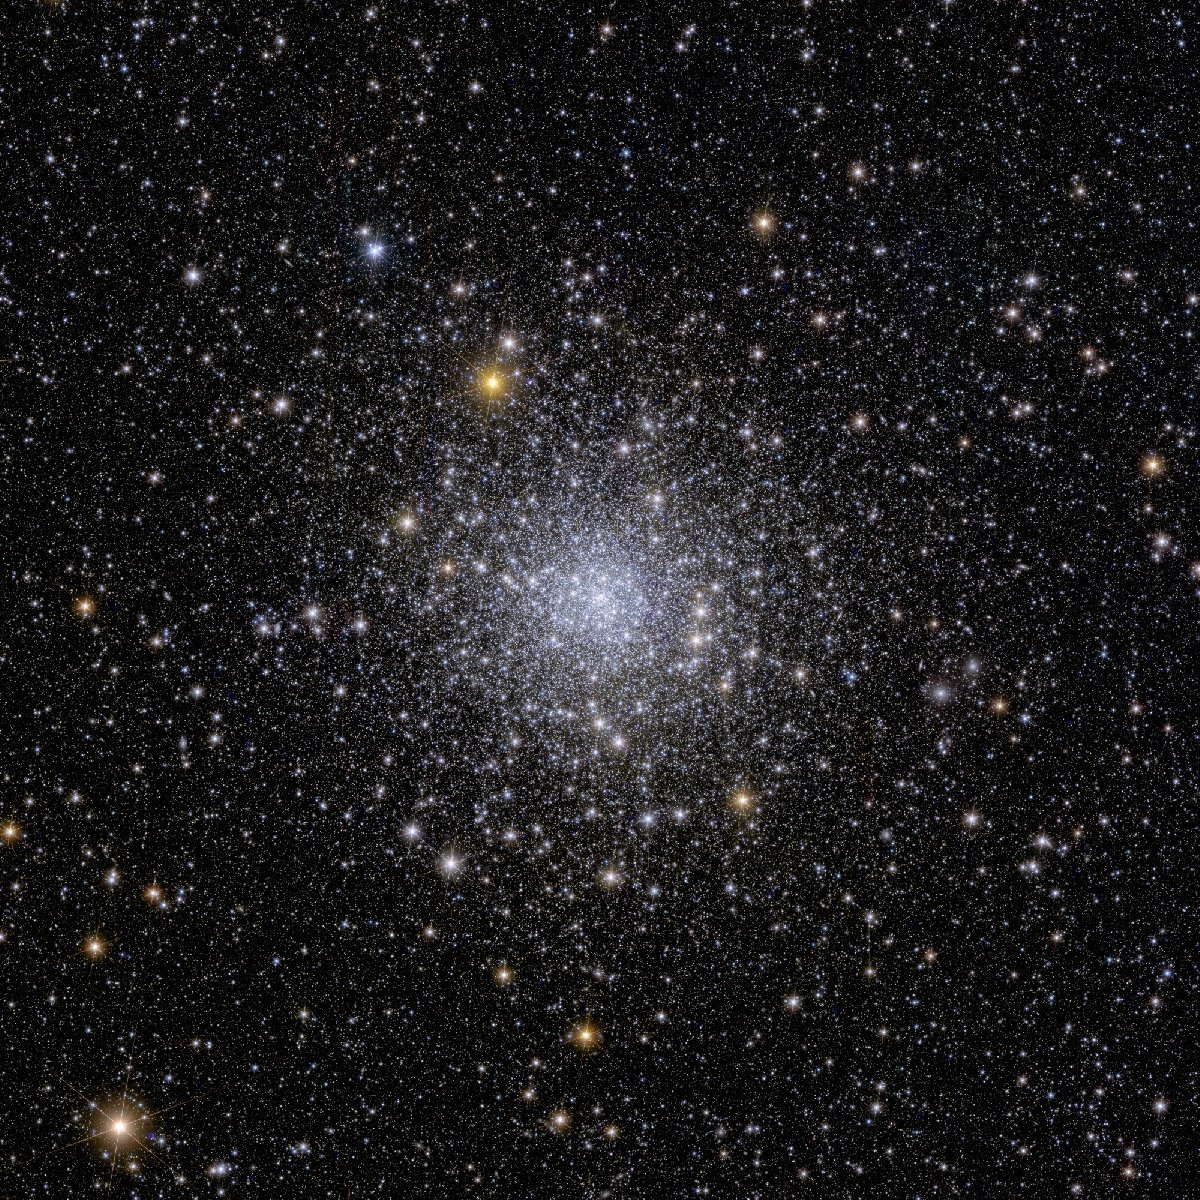 e2-globular-cluster-ngc-6397.jpg